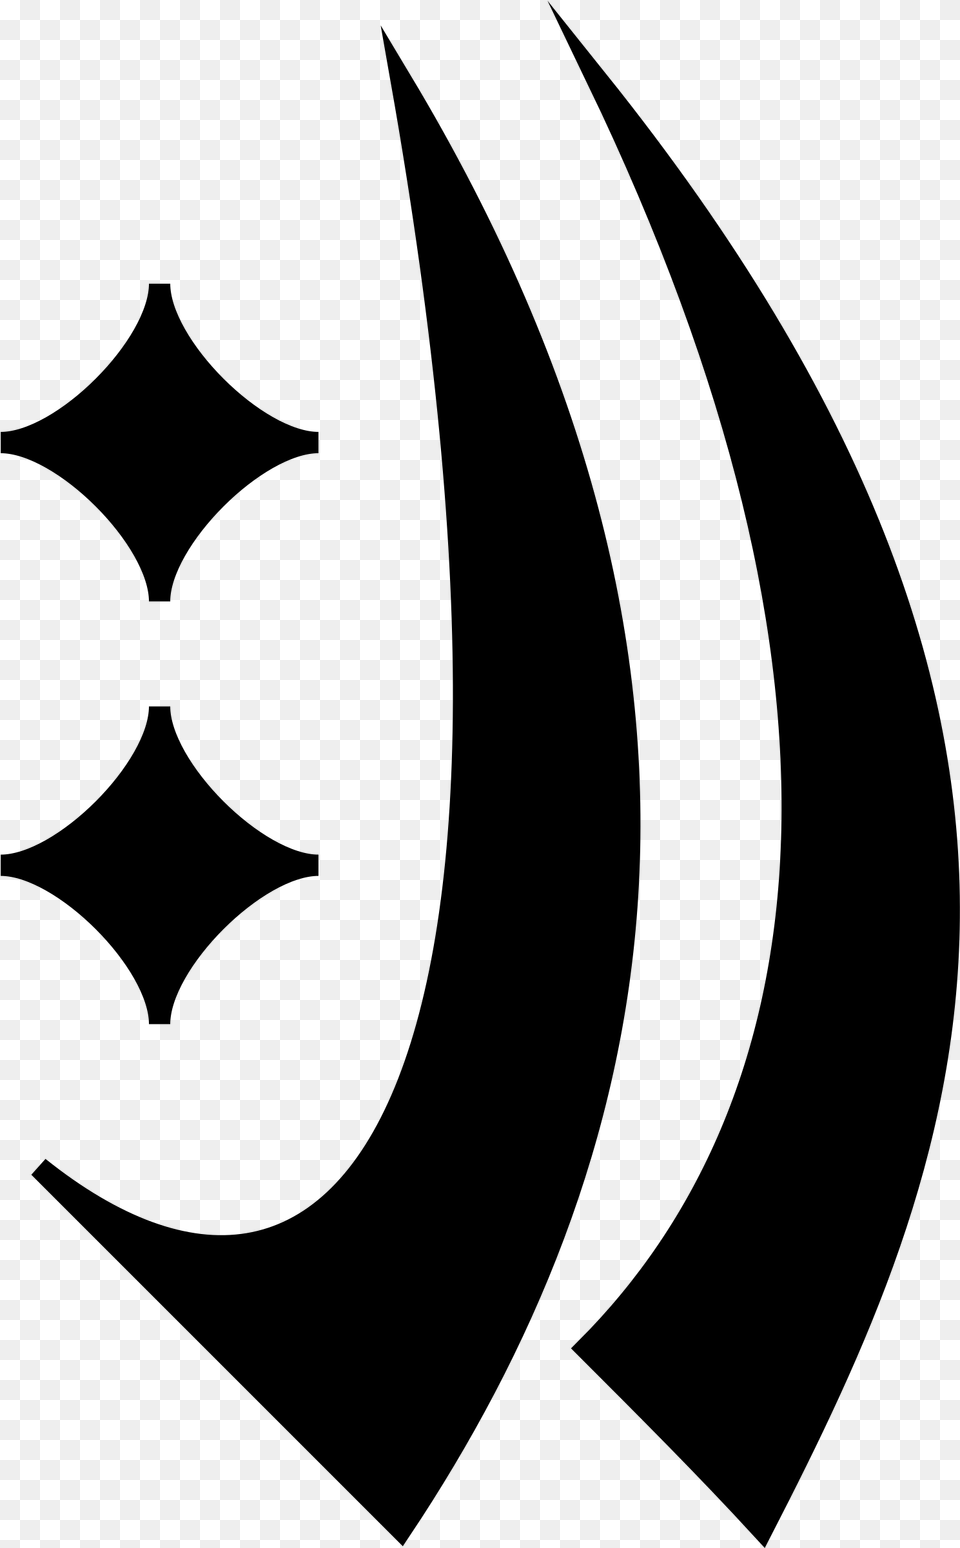 This Icons Design Of Wintermark Runes Empire Larp Runes, Gray Free Transparent Png